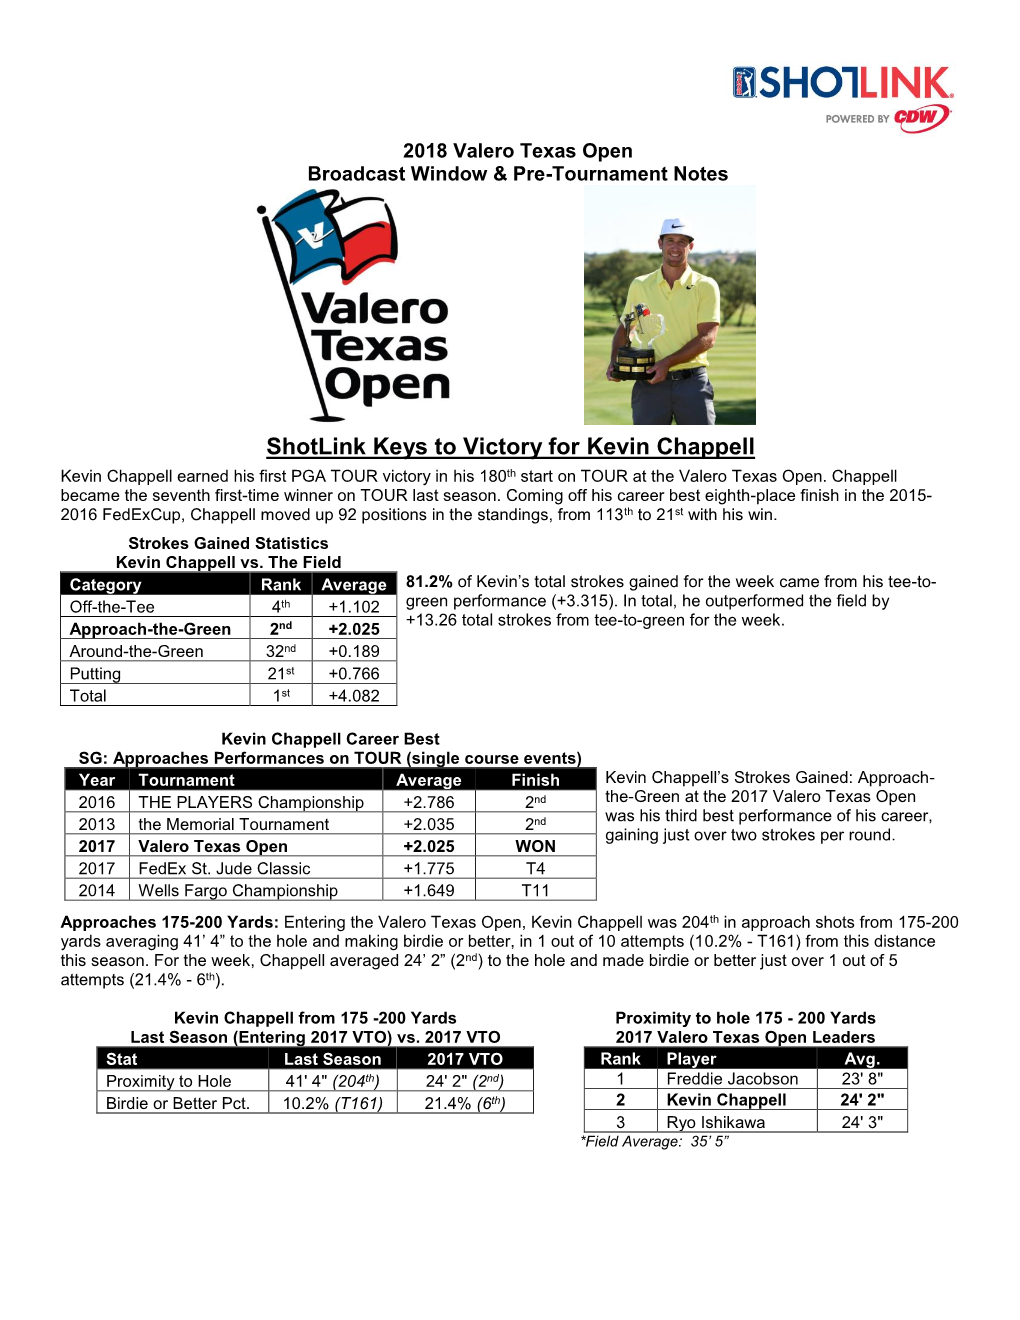 2018 Valero Texas Open Shotlink & Broadcast